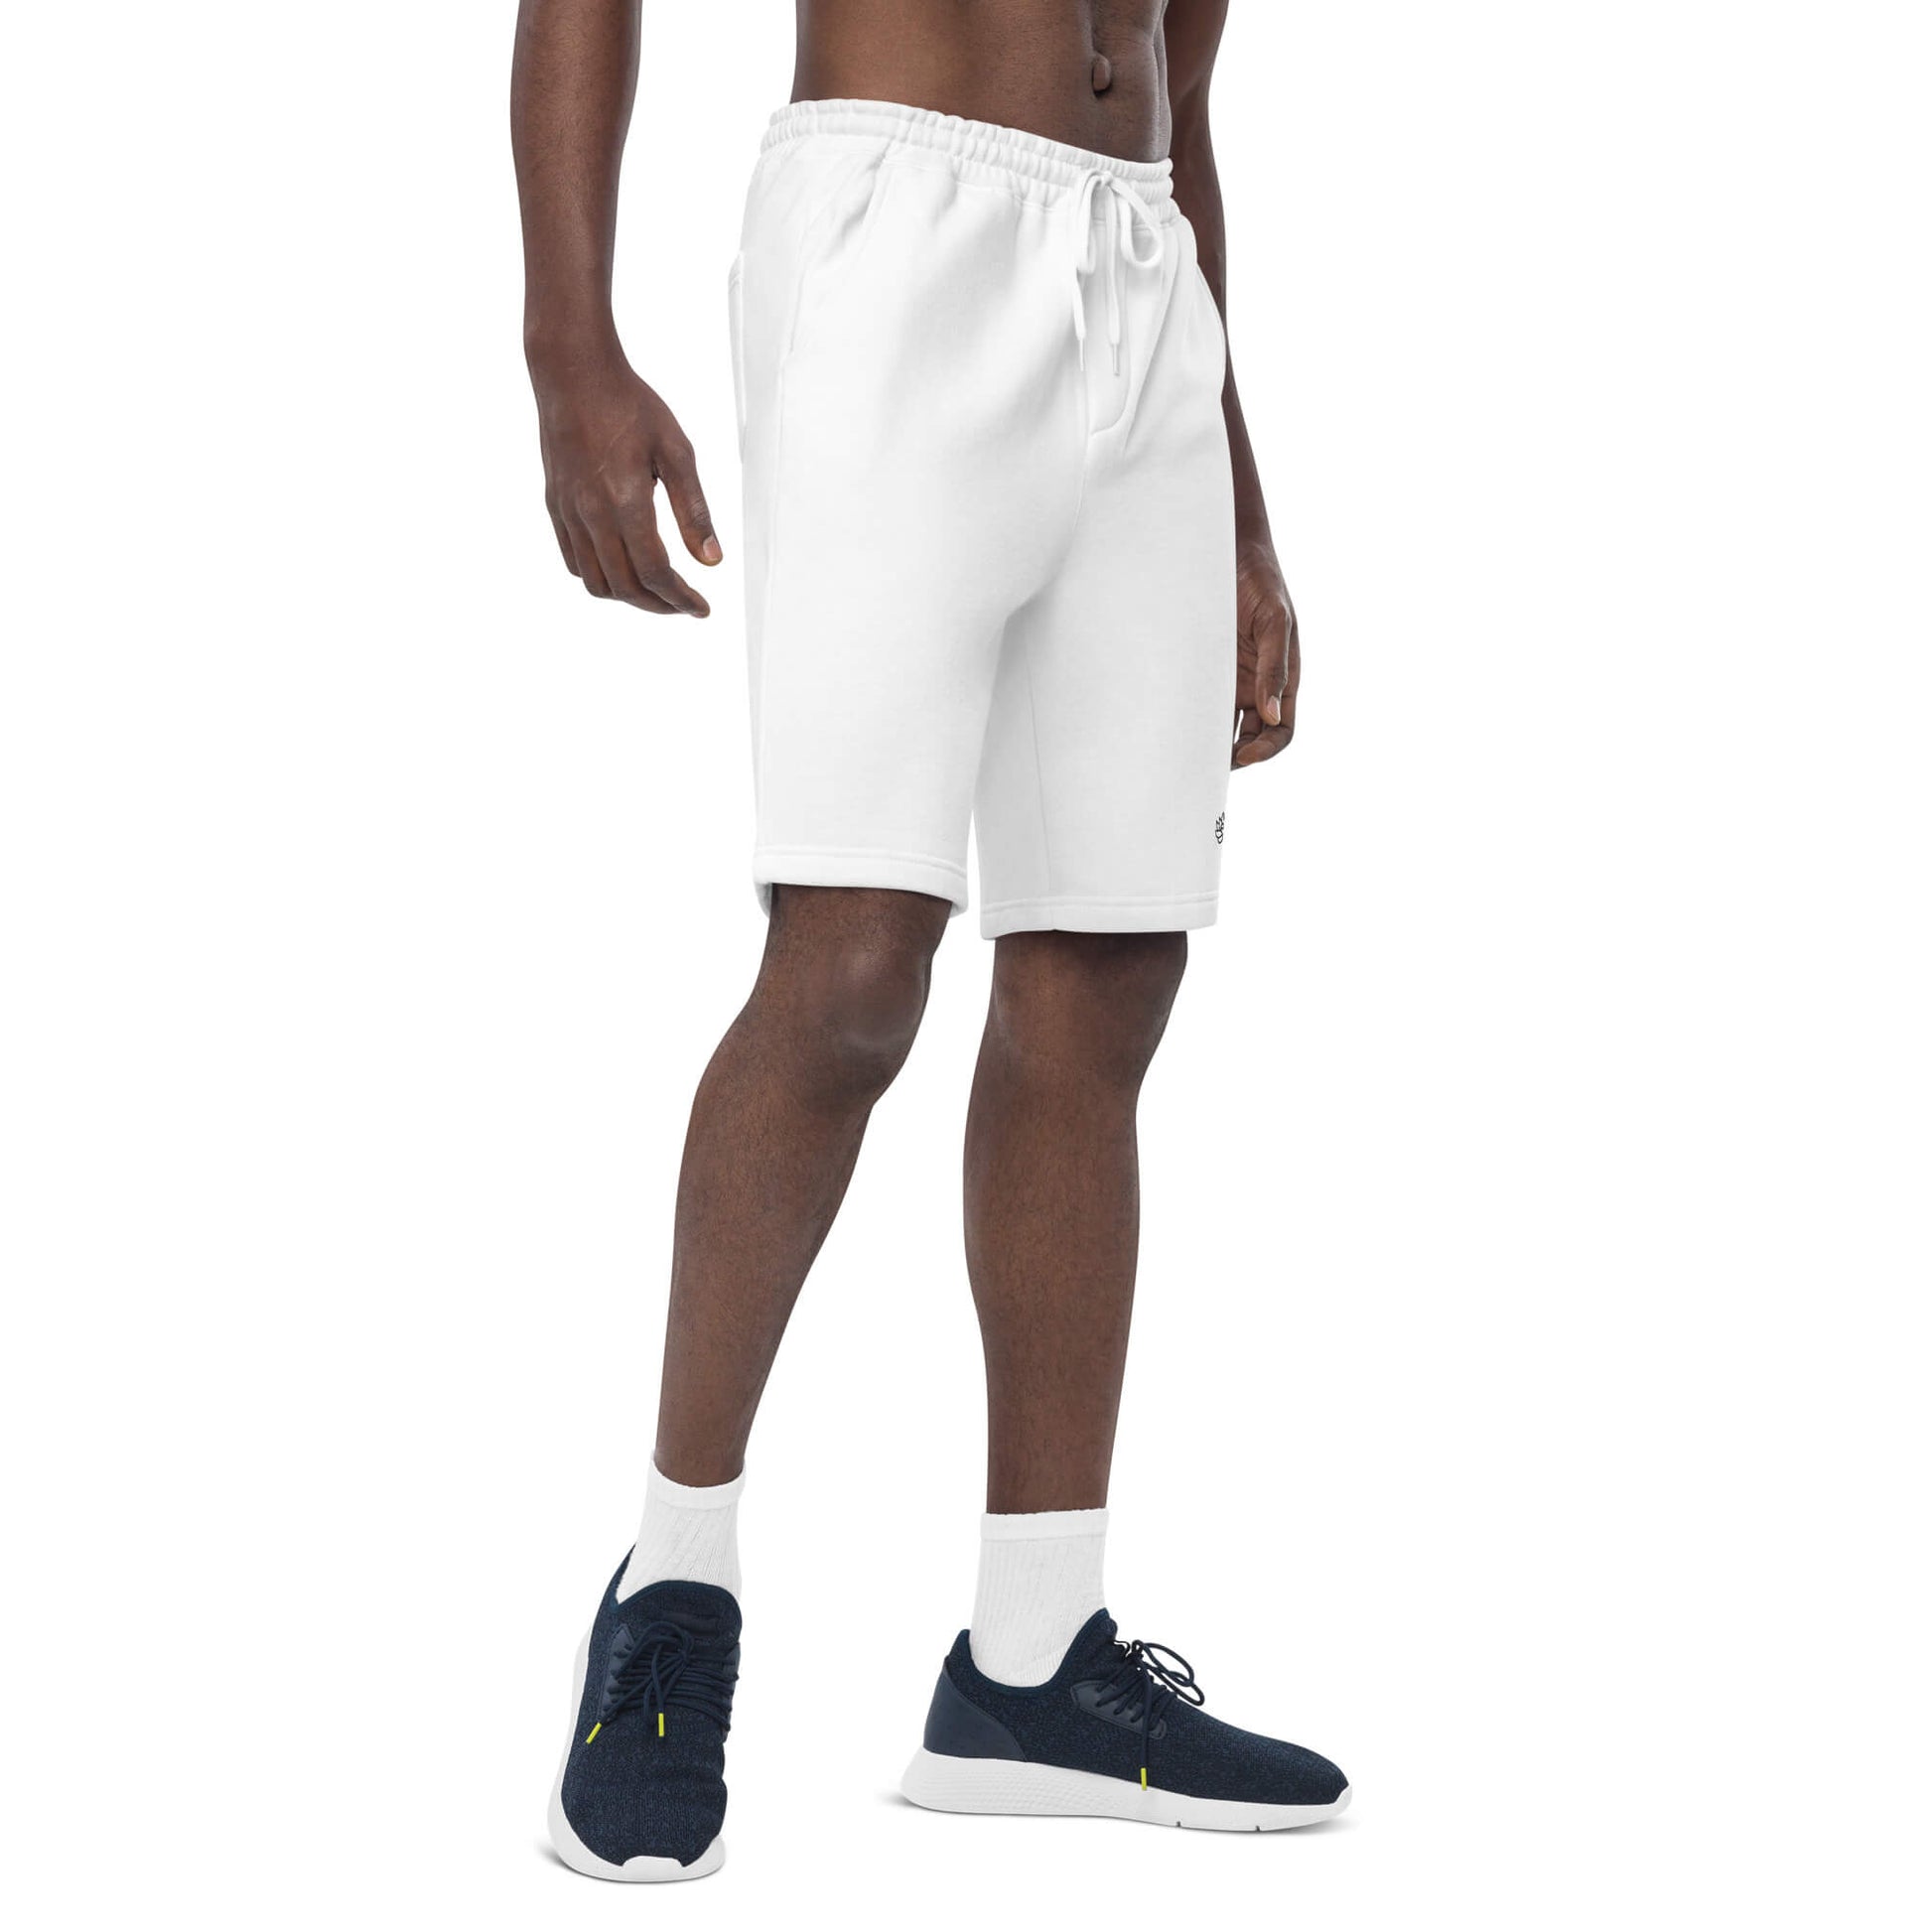 fleece shorts men’s white